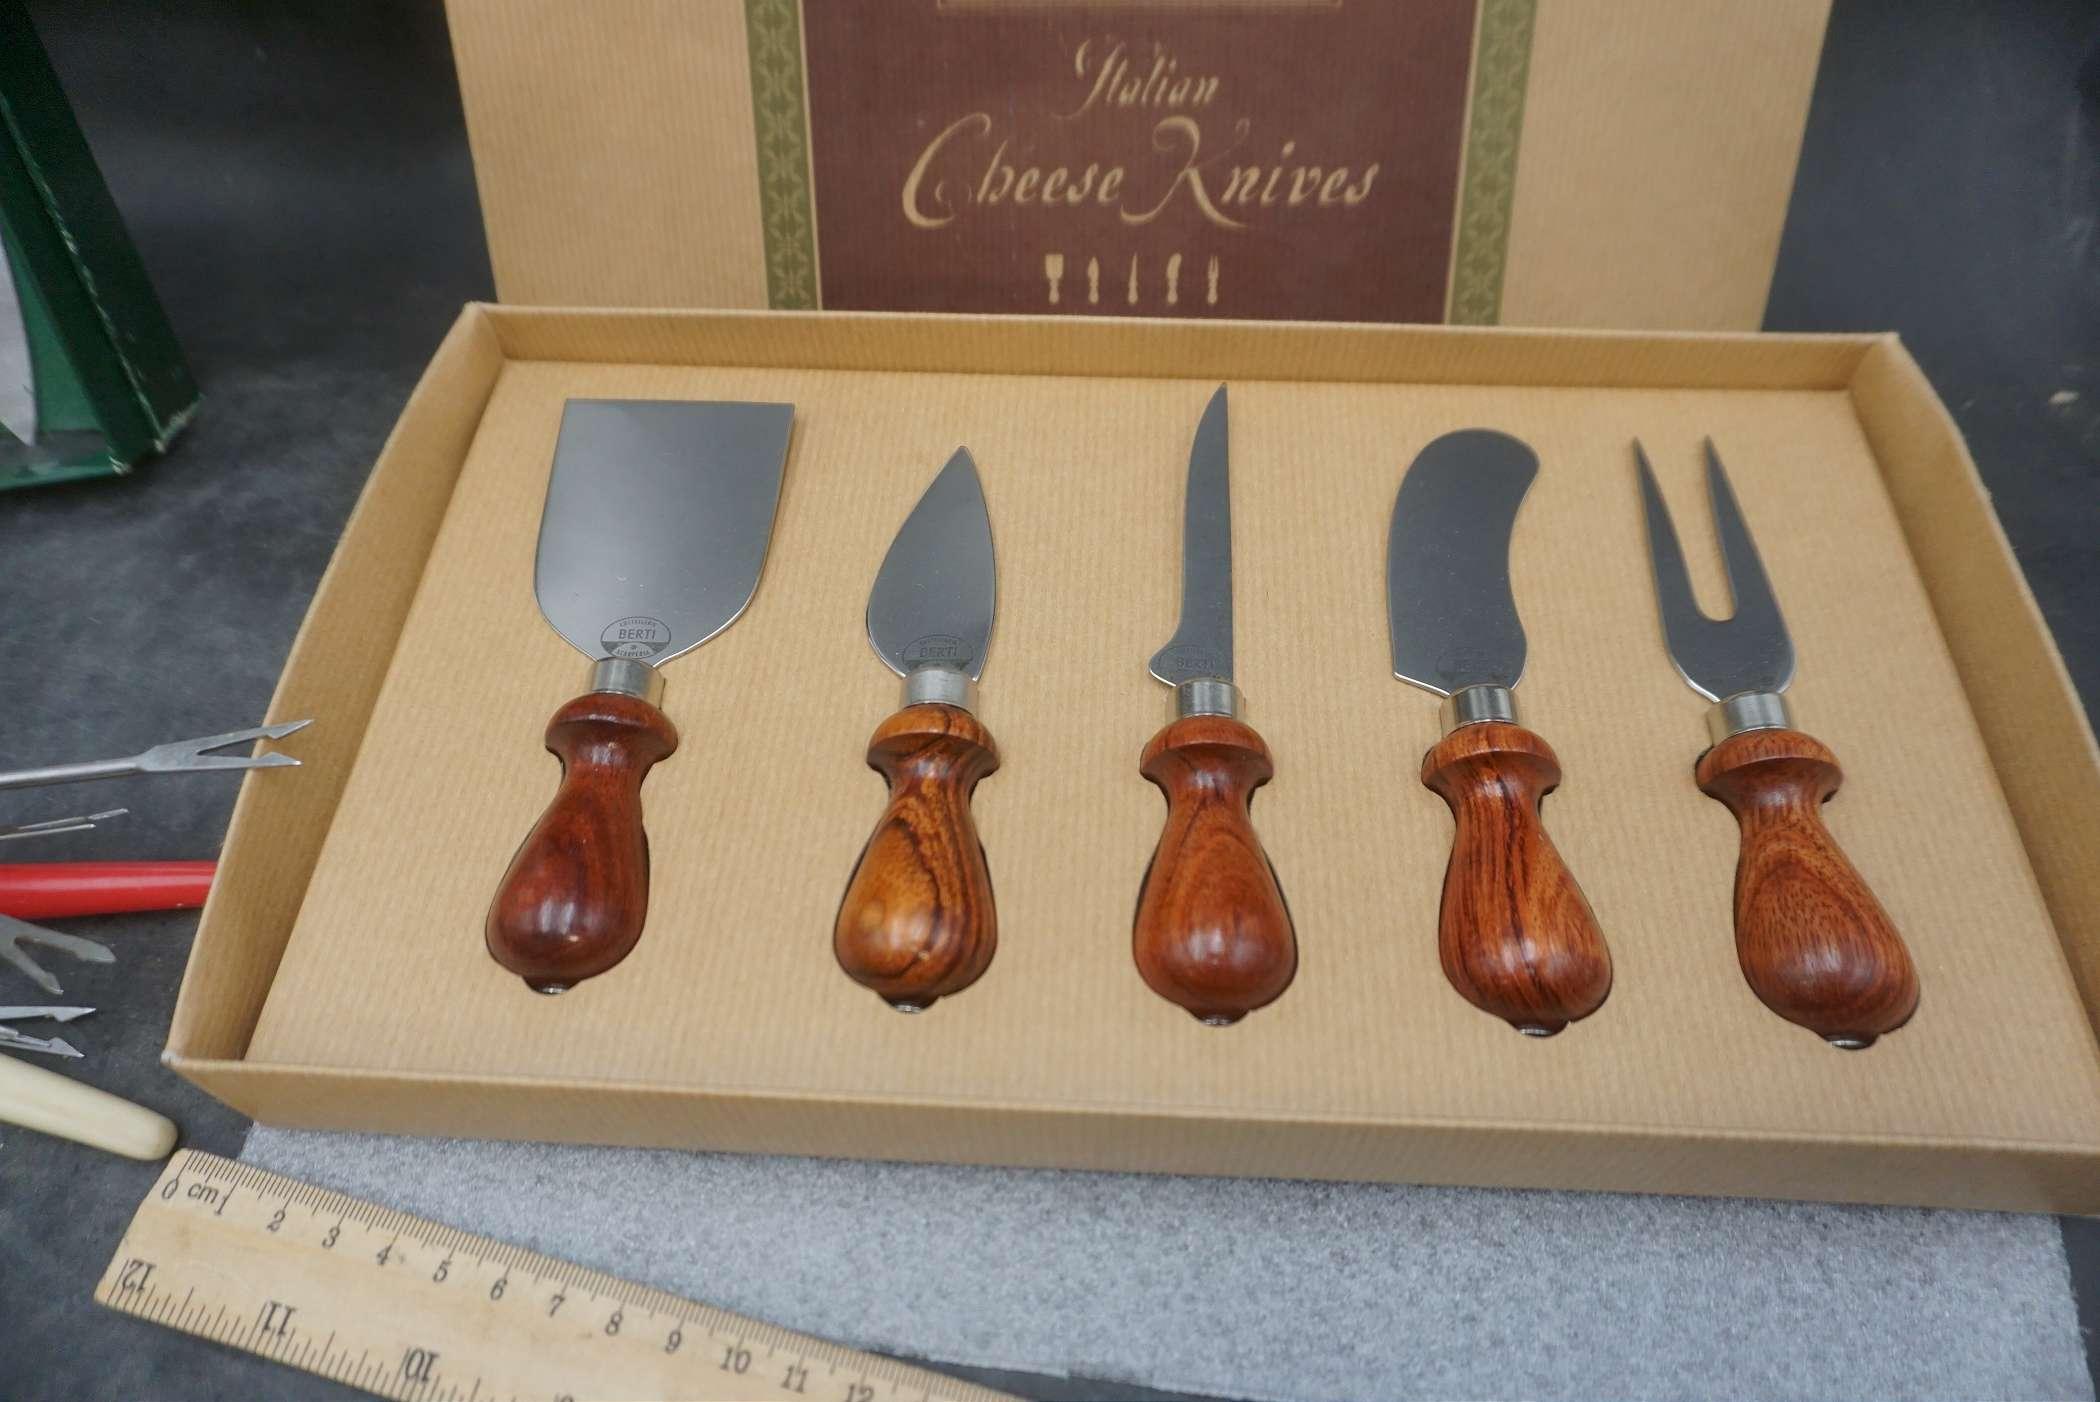 Italian Cheese Knives, Knife Set, Fondue Forks & Utensils